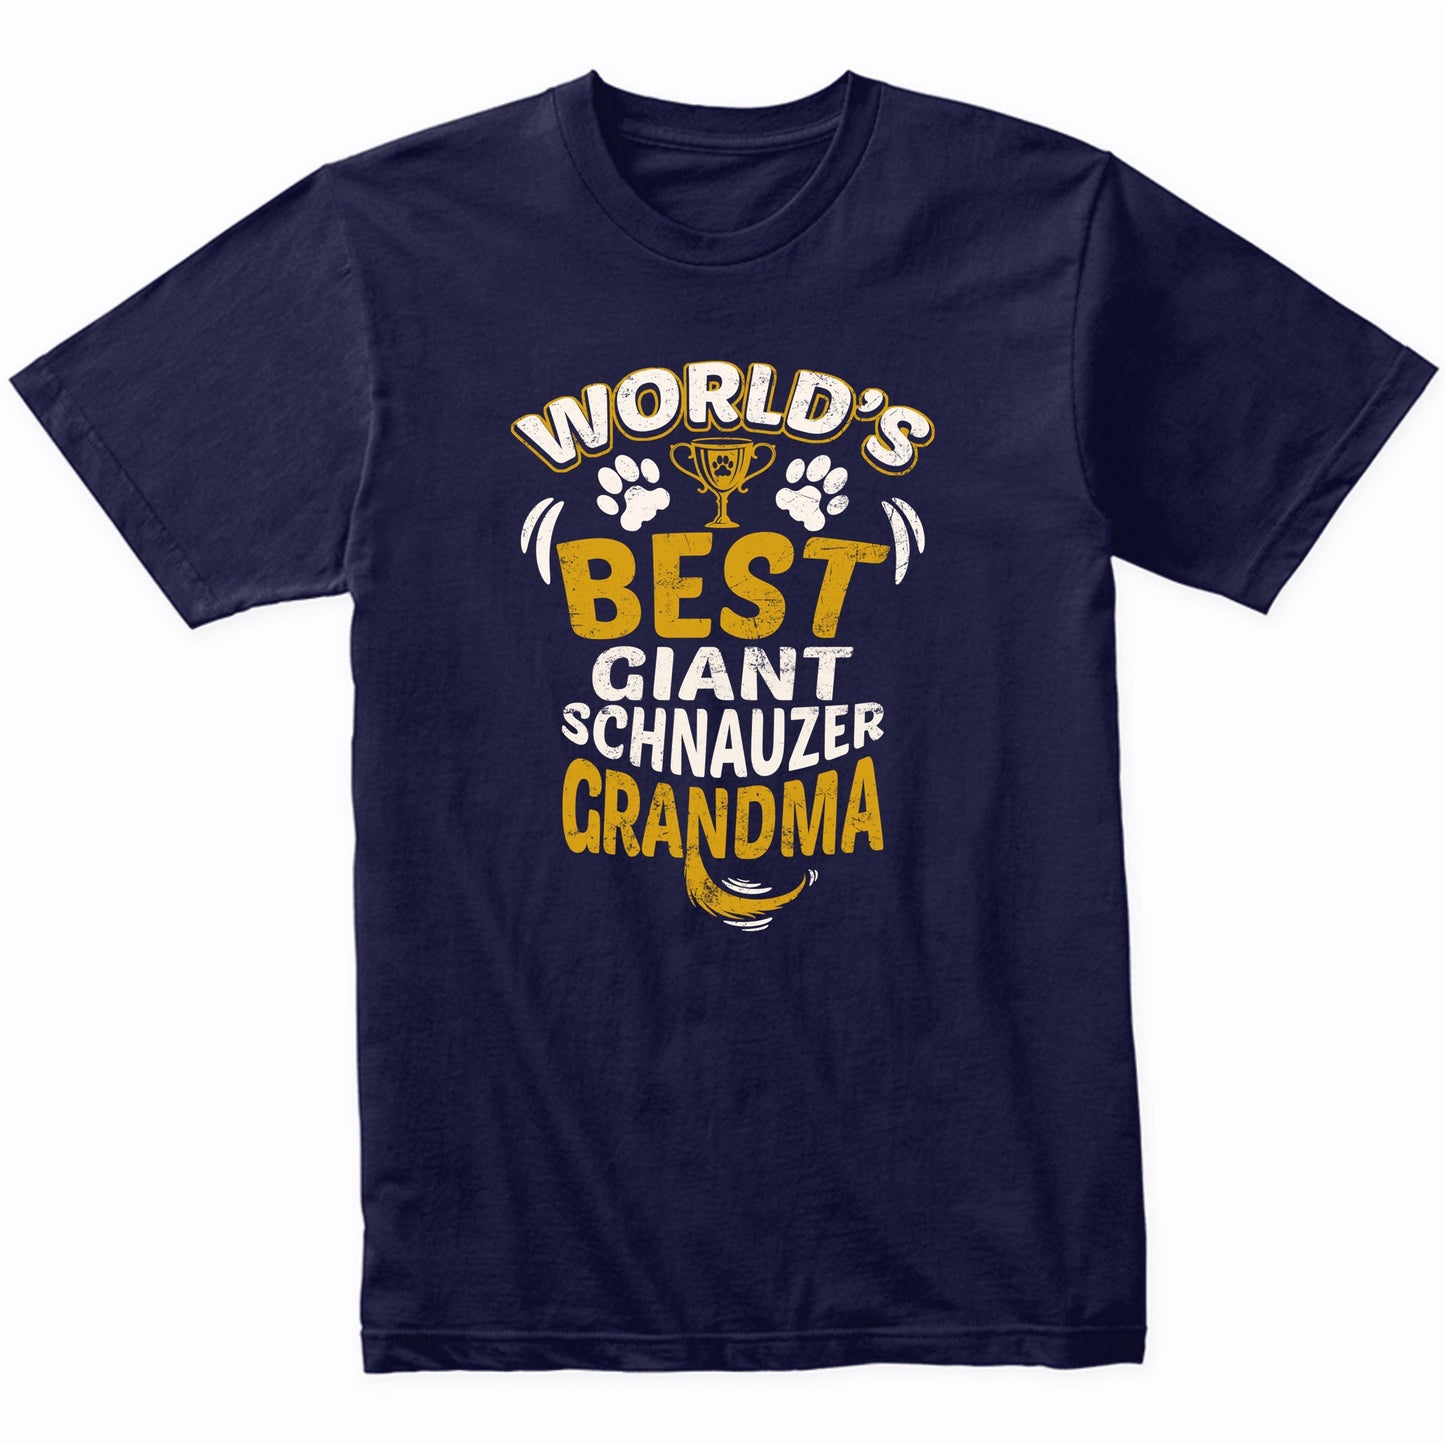 World's Best Giant Schnauzer Grandma Graphic T-Shirt